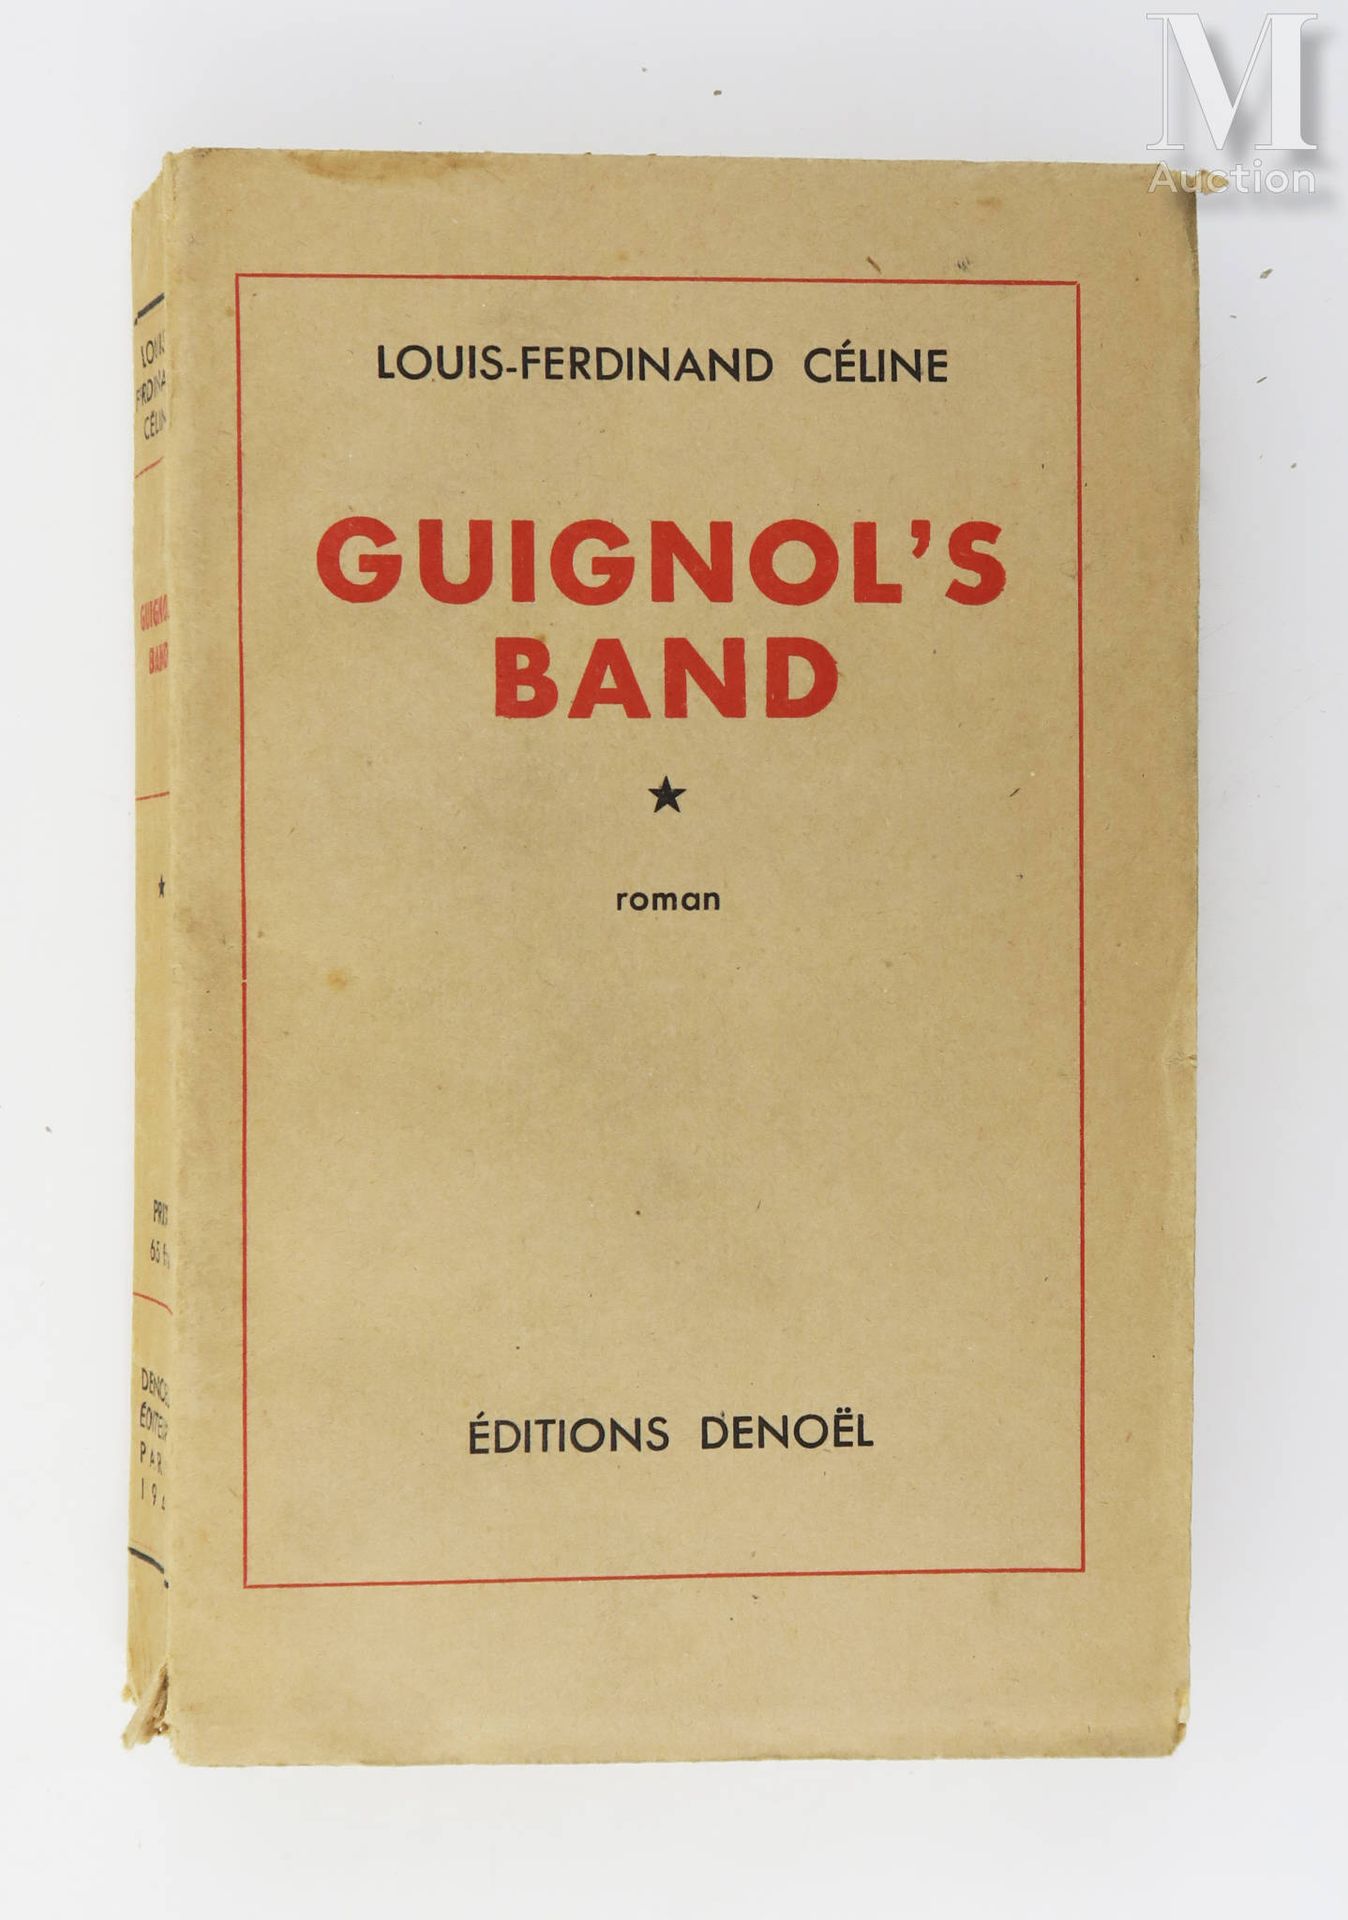 CÉLINE (Louis-Ferdinand). La banda del Guignol. Parigi, Denoël, 1944.

In-8 bros&hellip;